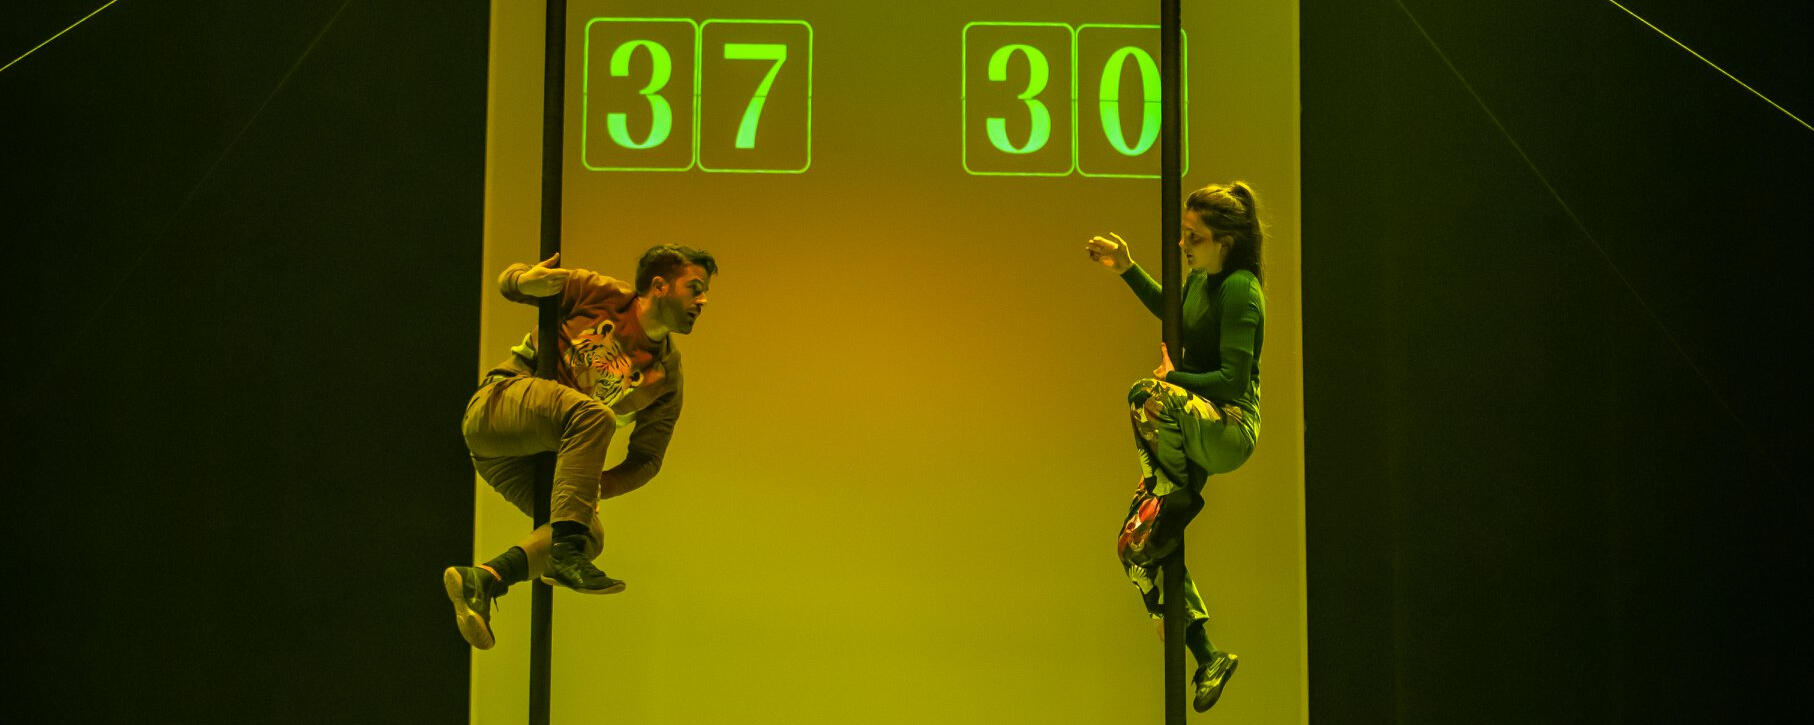 Movie : Sept Moments de joie - Cirque Éloize - Acrobatic advisor (2020)